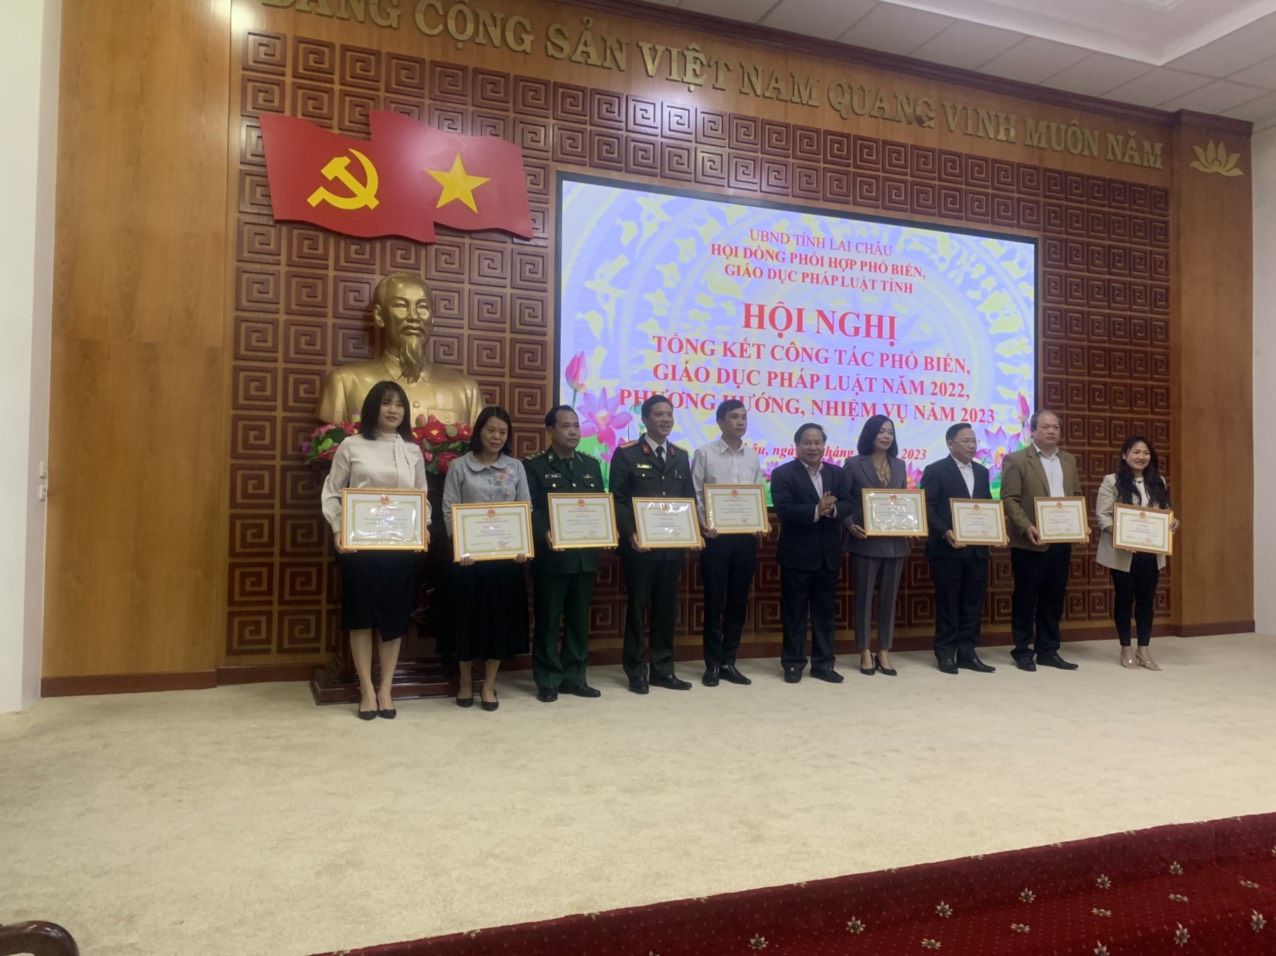 Đồng chí Dương Huyền Sâm, Chánh Thanh tra Sở Nông nghiệp vinh dự được nhận Bằng khen của Chủ tịch UBND tỉnh Lai Châu